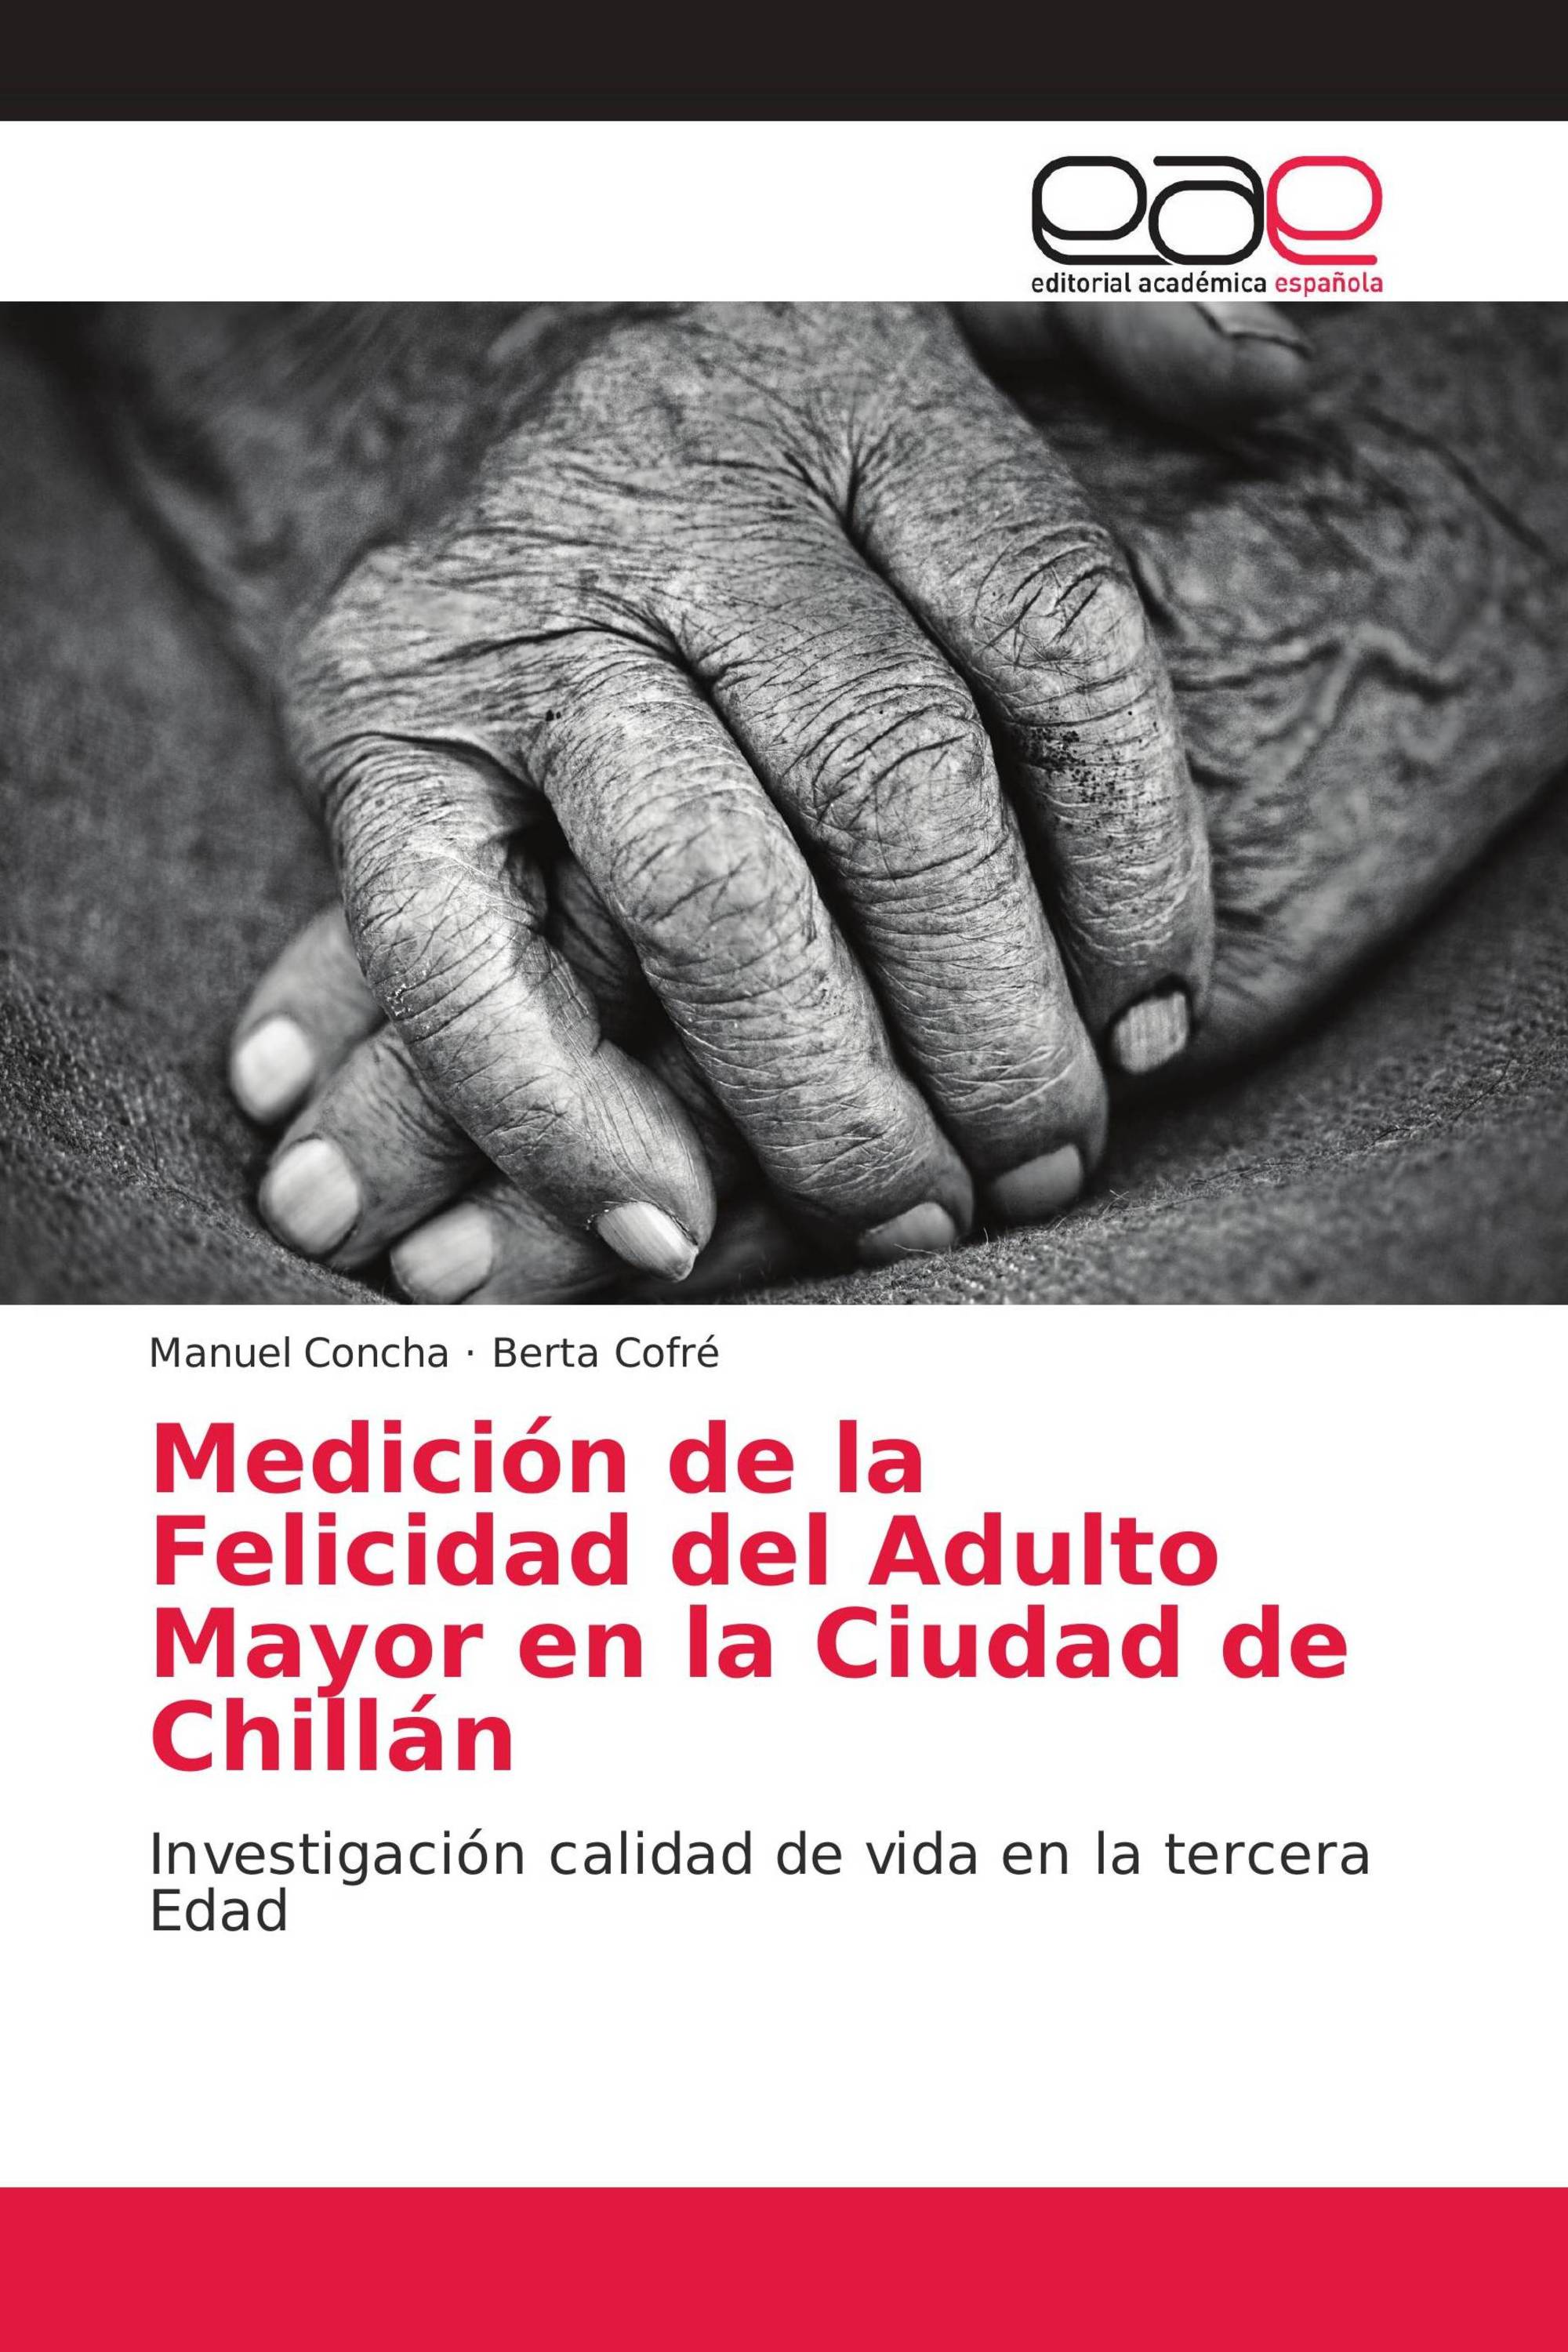 Medición de la Felicidad del Adulto Mayor en la Ciudad de Chillán